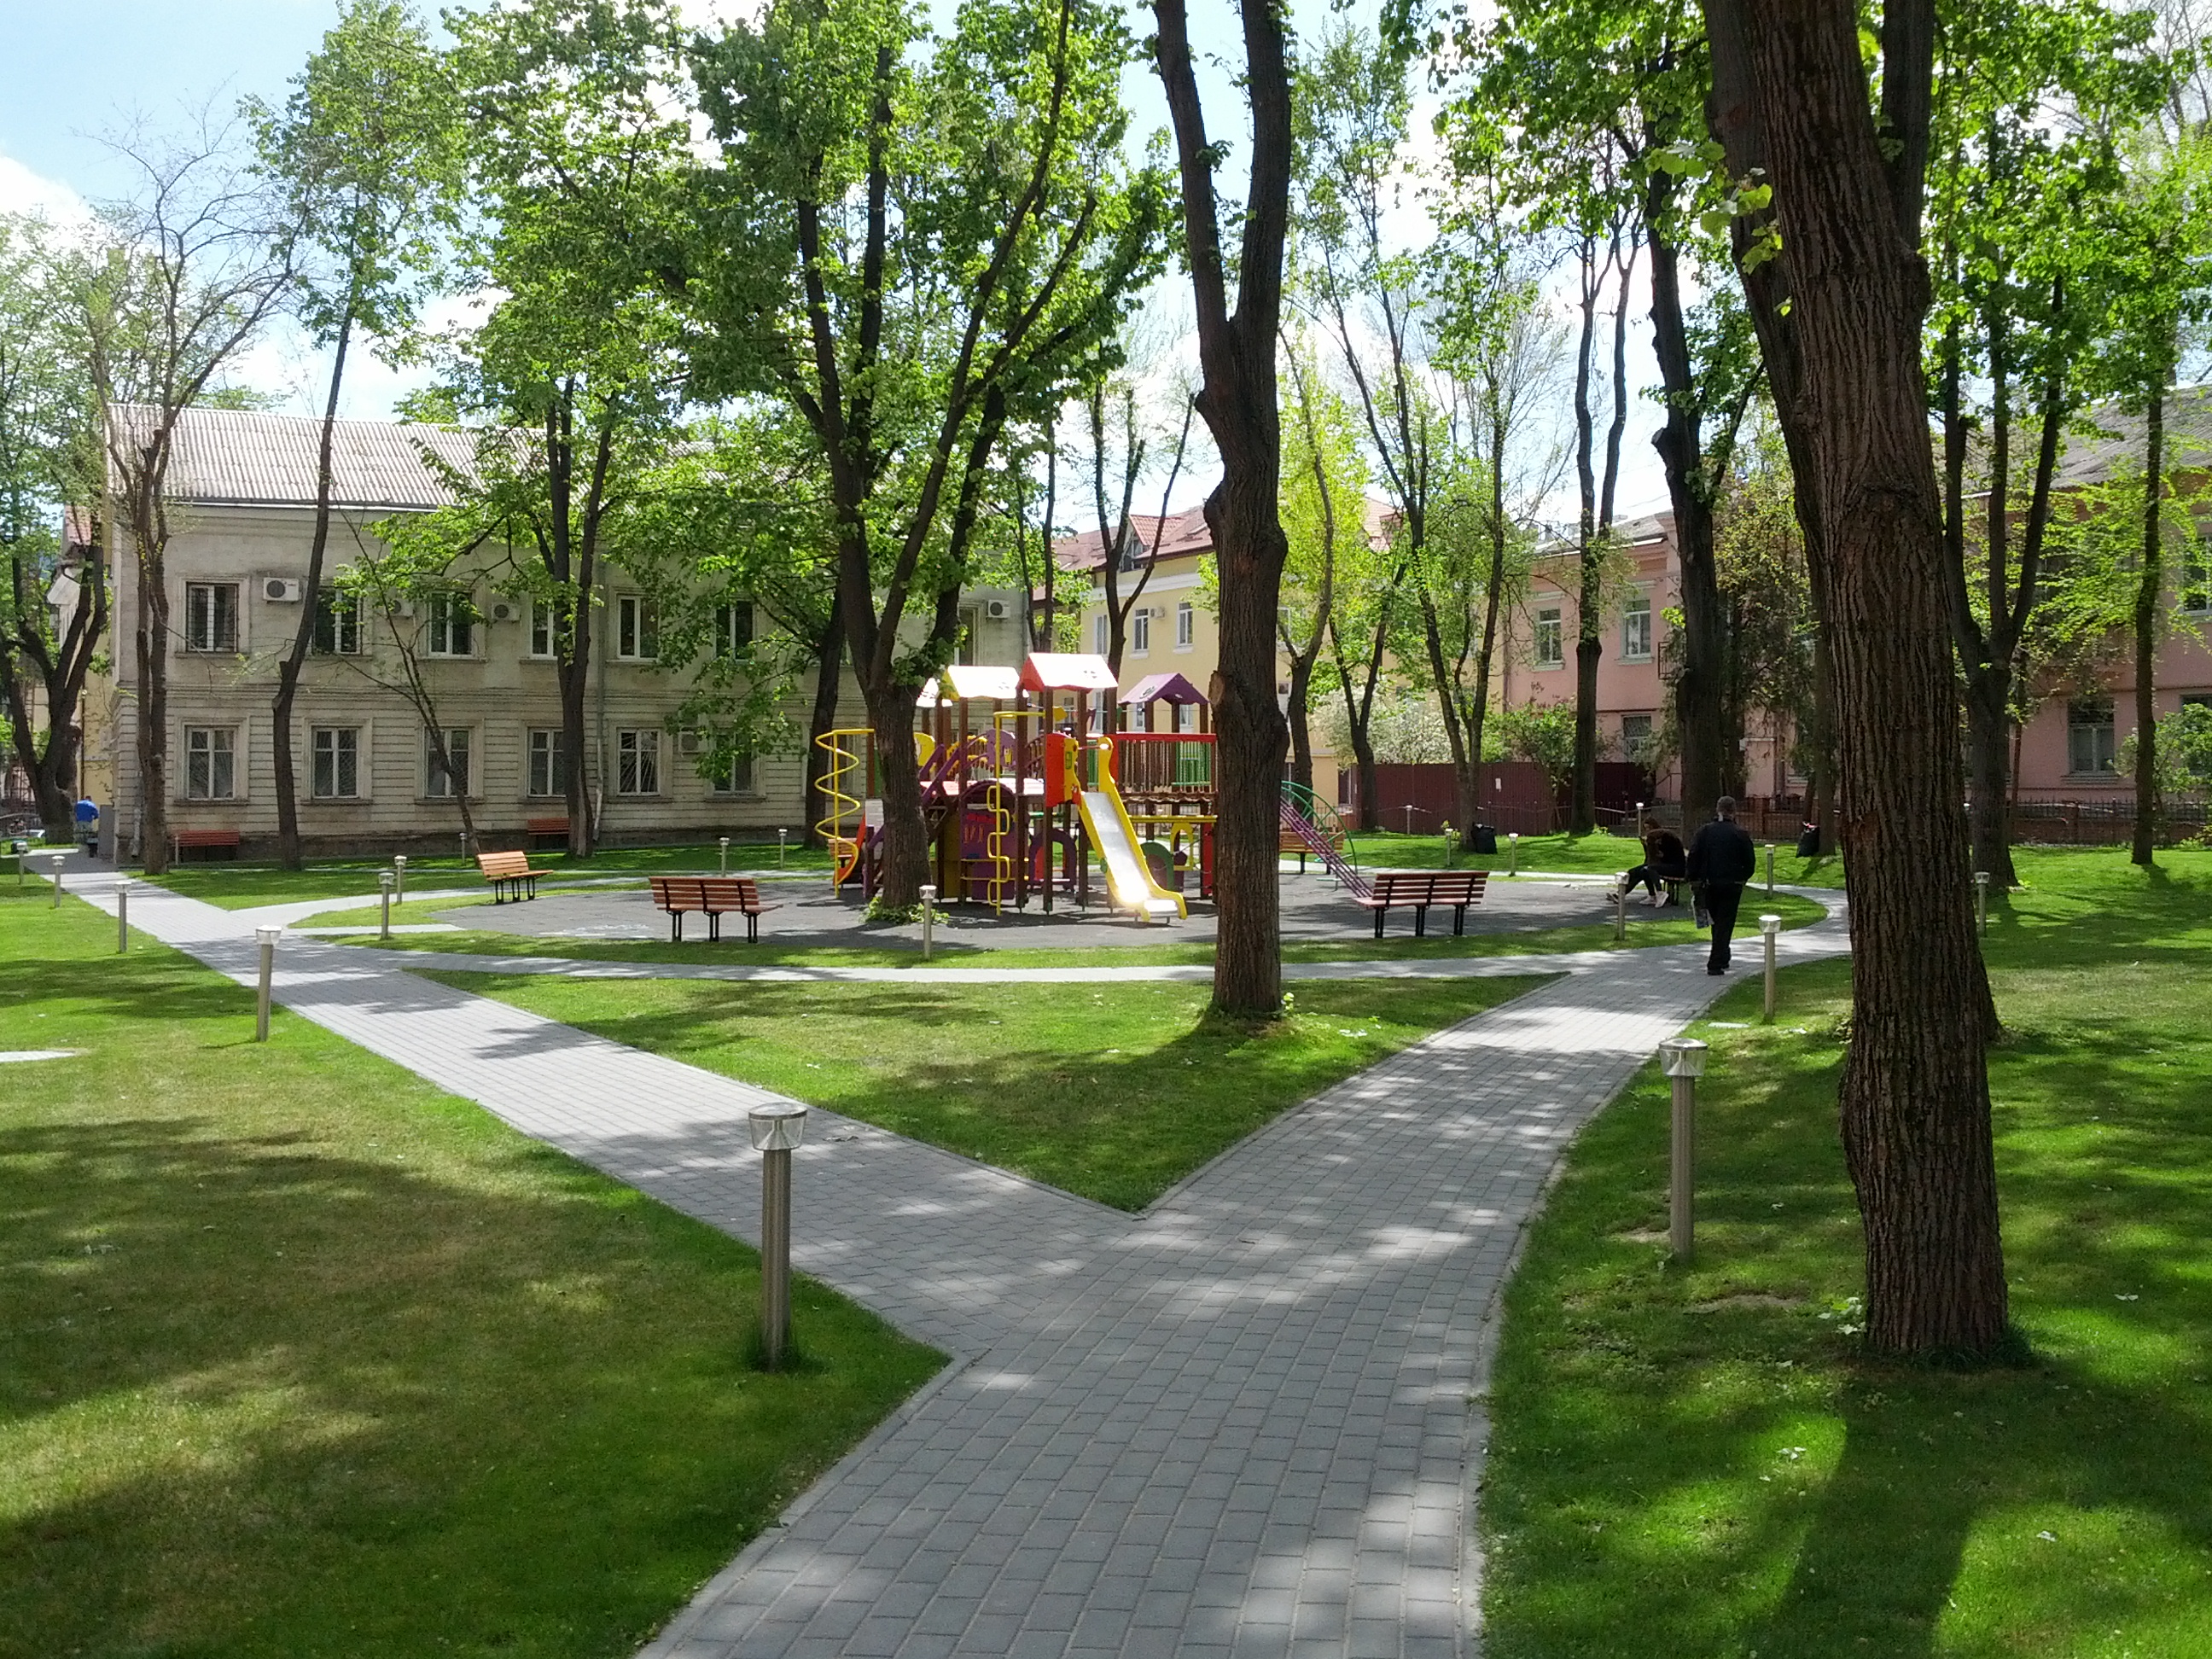 MD, Orasul Chisinau, Teren de joaca pentru copii din parcul de pe strada Bulgara